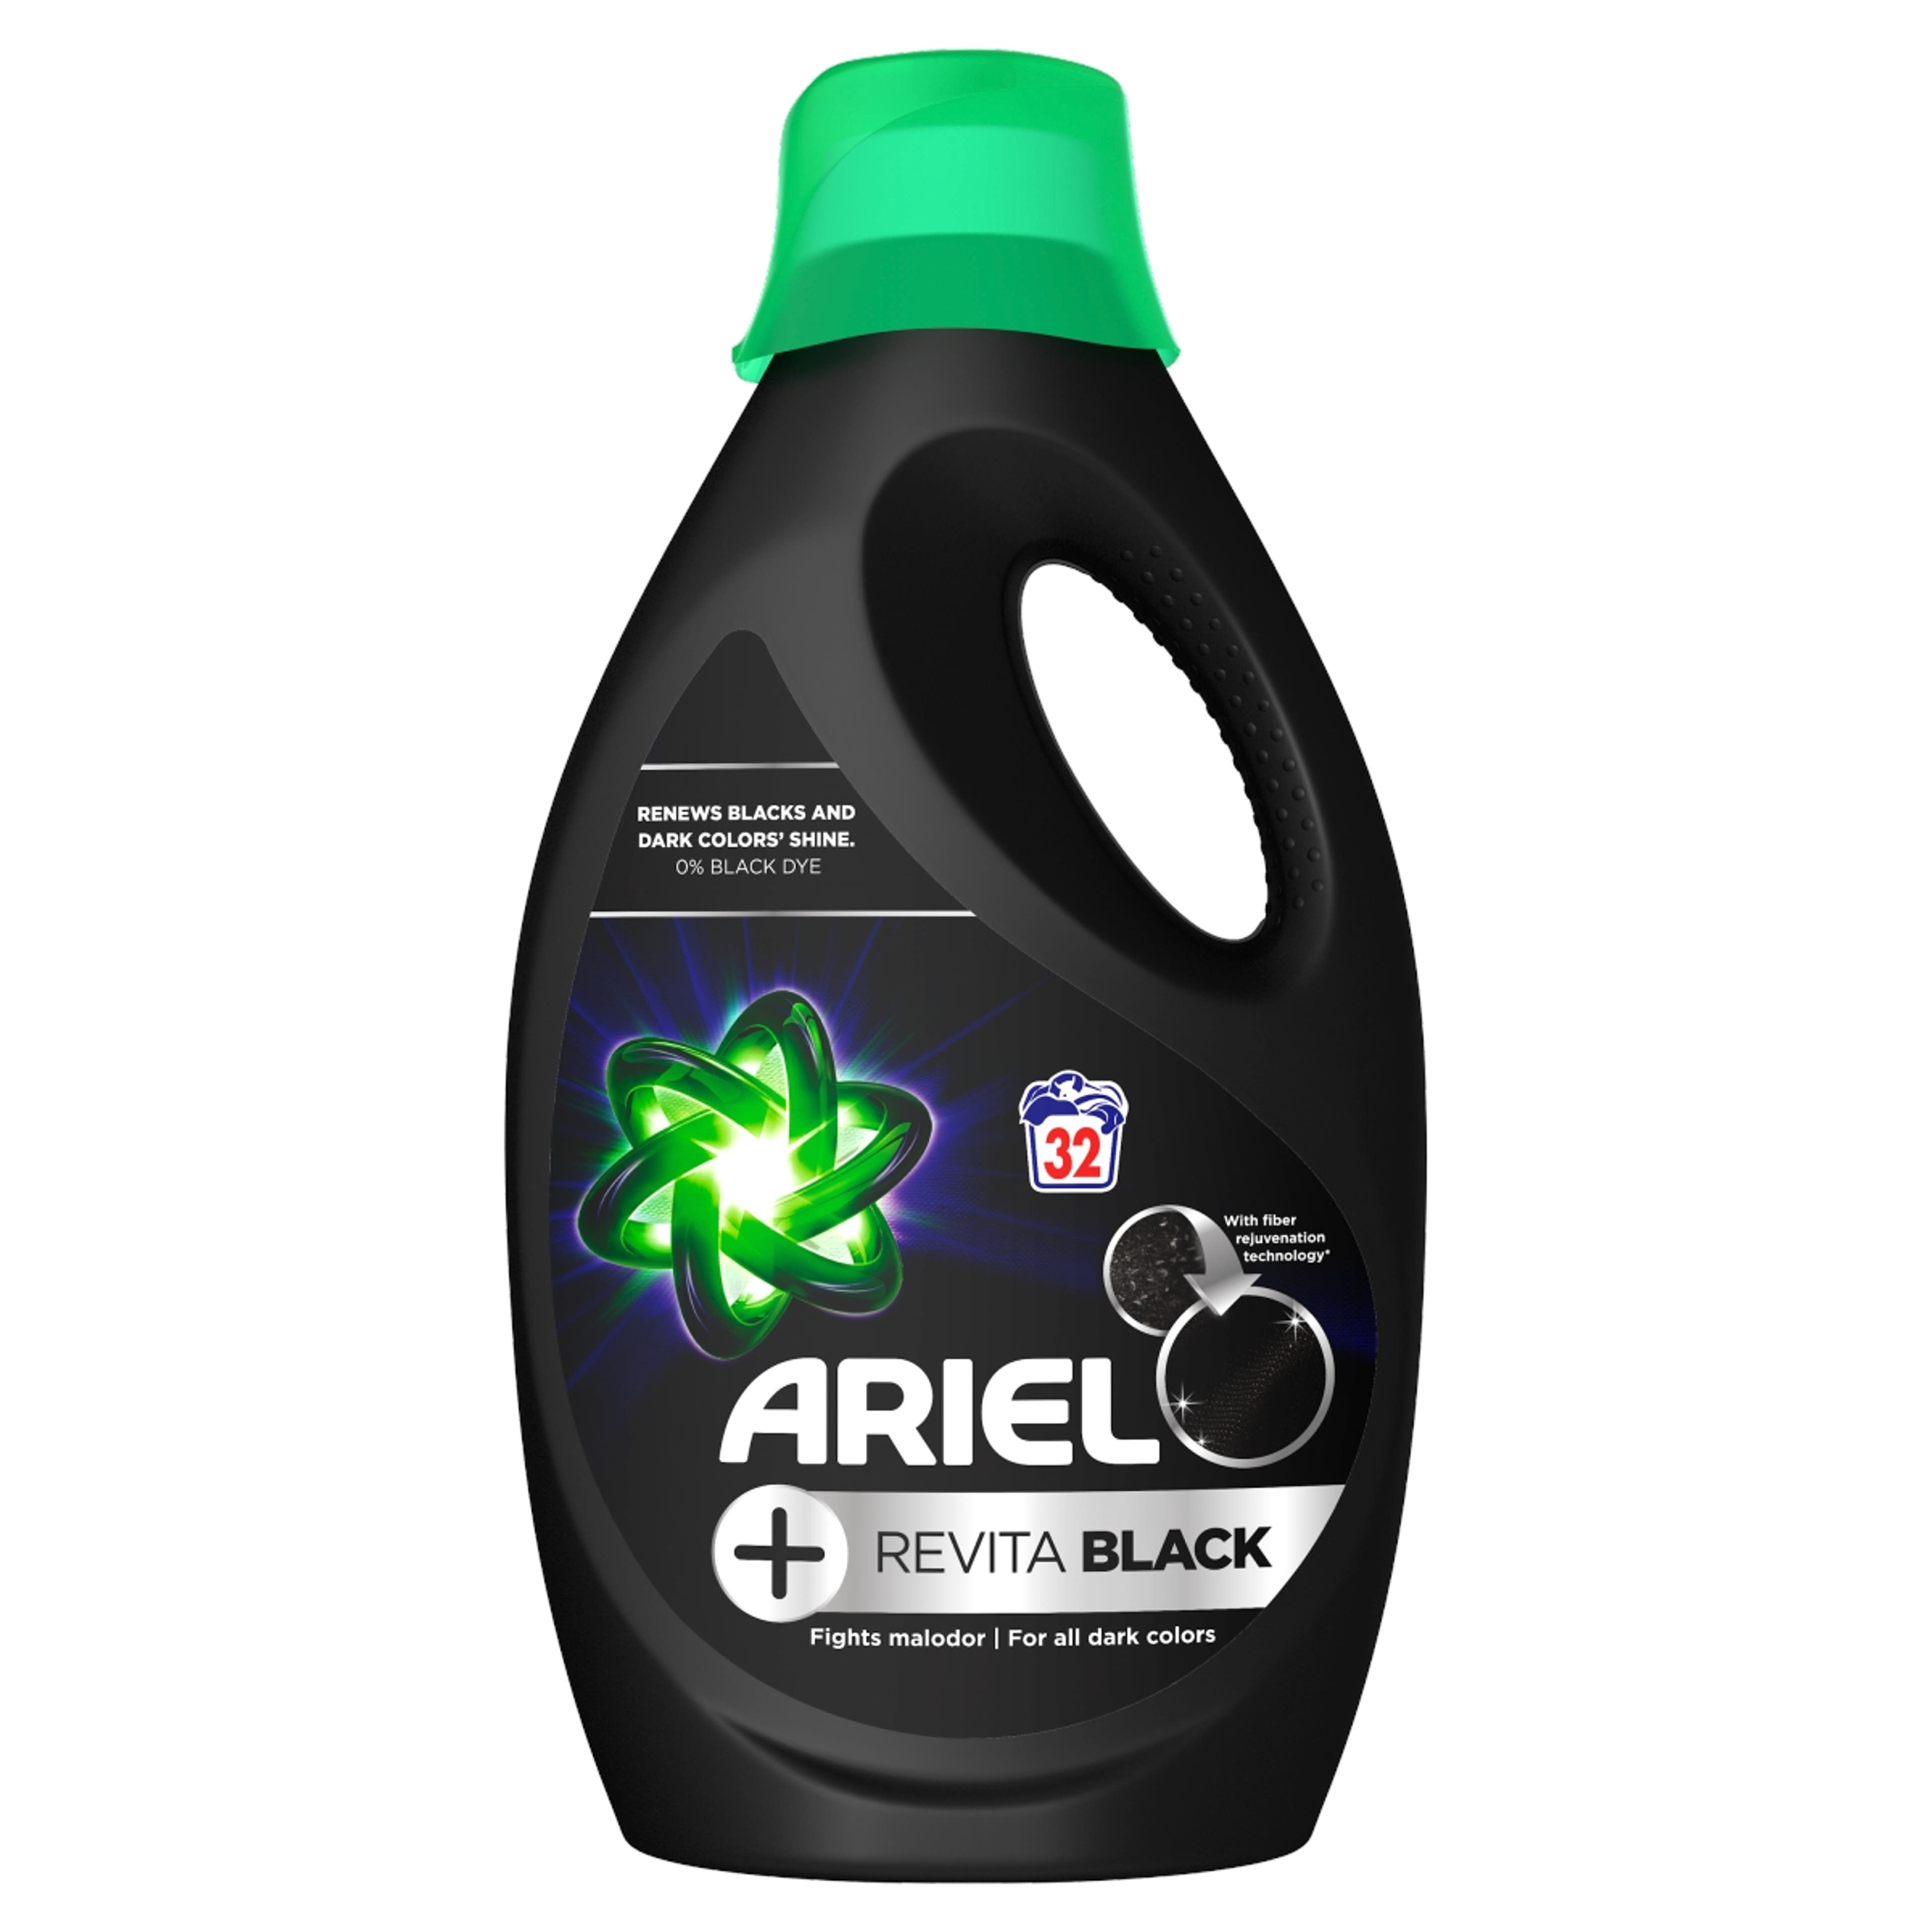 Ariel folyékony mosószer black, 32 mosás - 1760 ml-1